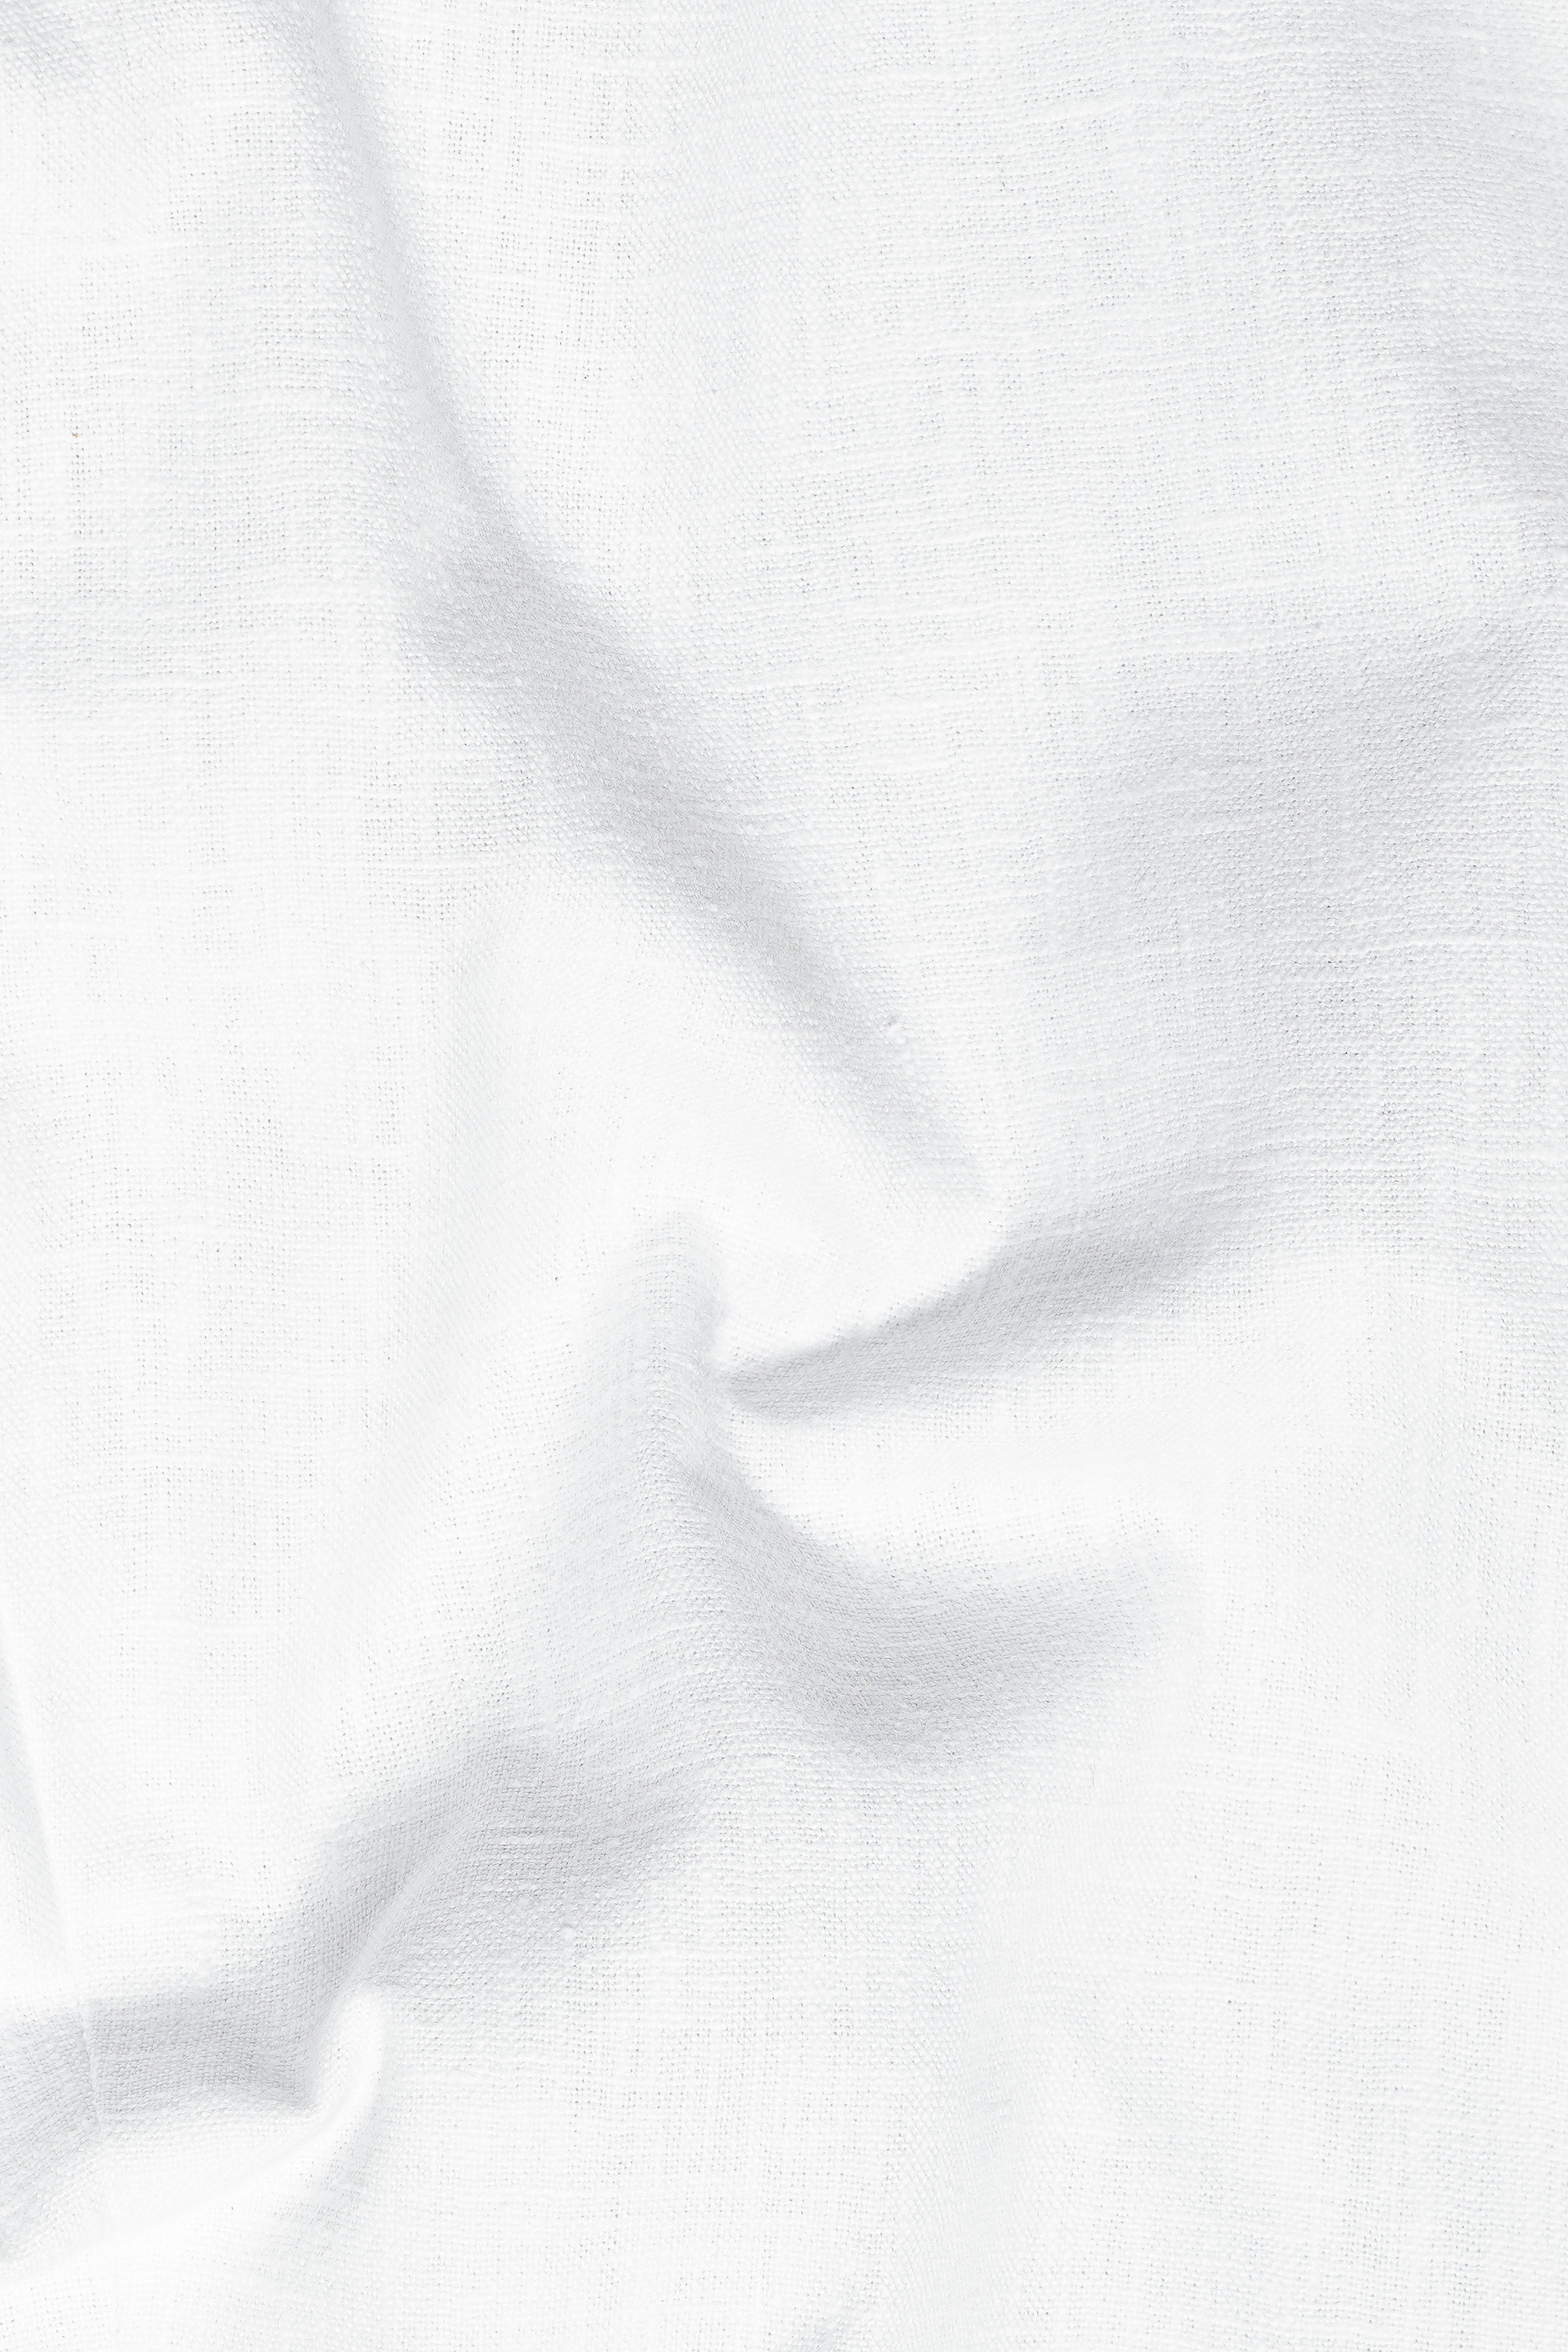 Bright White Luxurious Linen Pant T3042-28, T3042-30, T3042-32, T3042-34, T3042-36, T3042-38, T3042-40, T3042-42, T3042-44